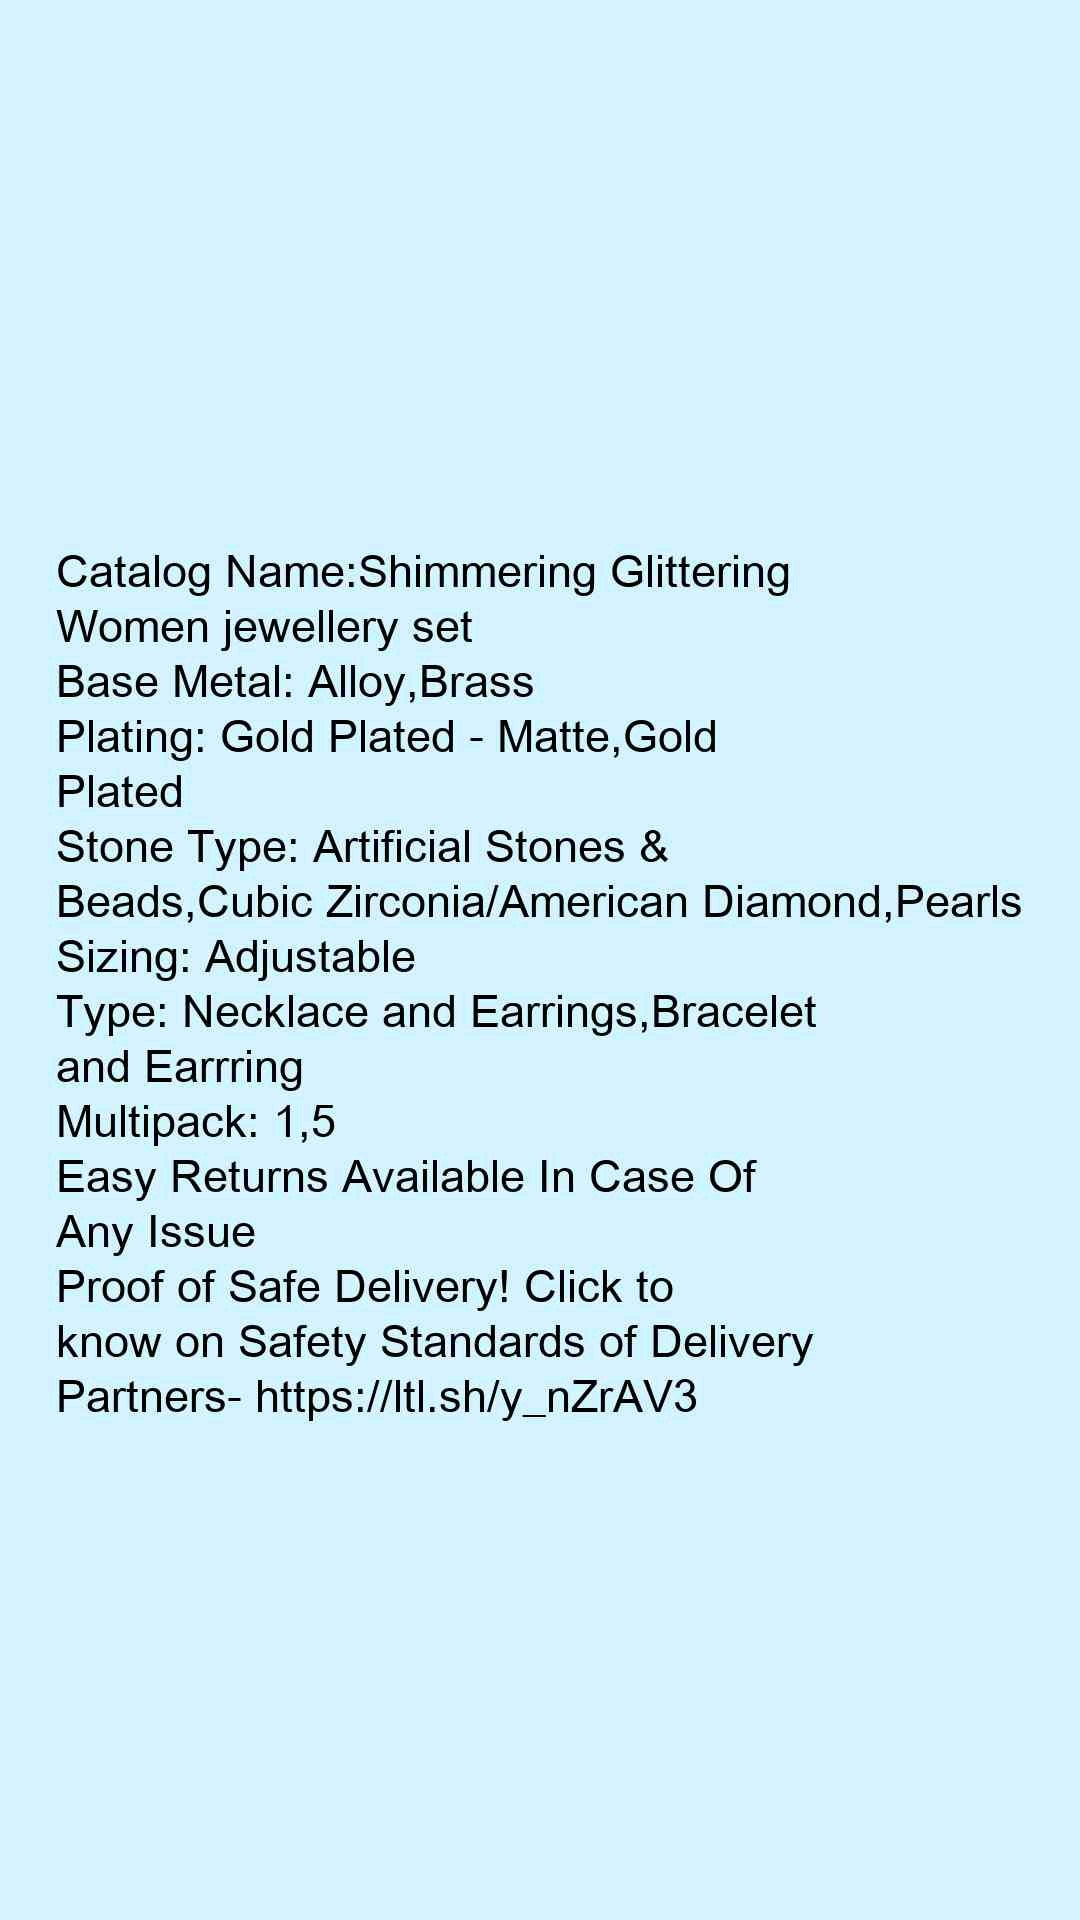 Shimmering Glittering Women jewellery set - Faritha